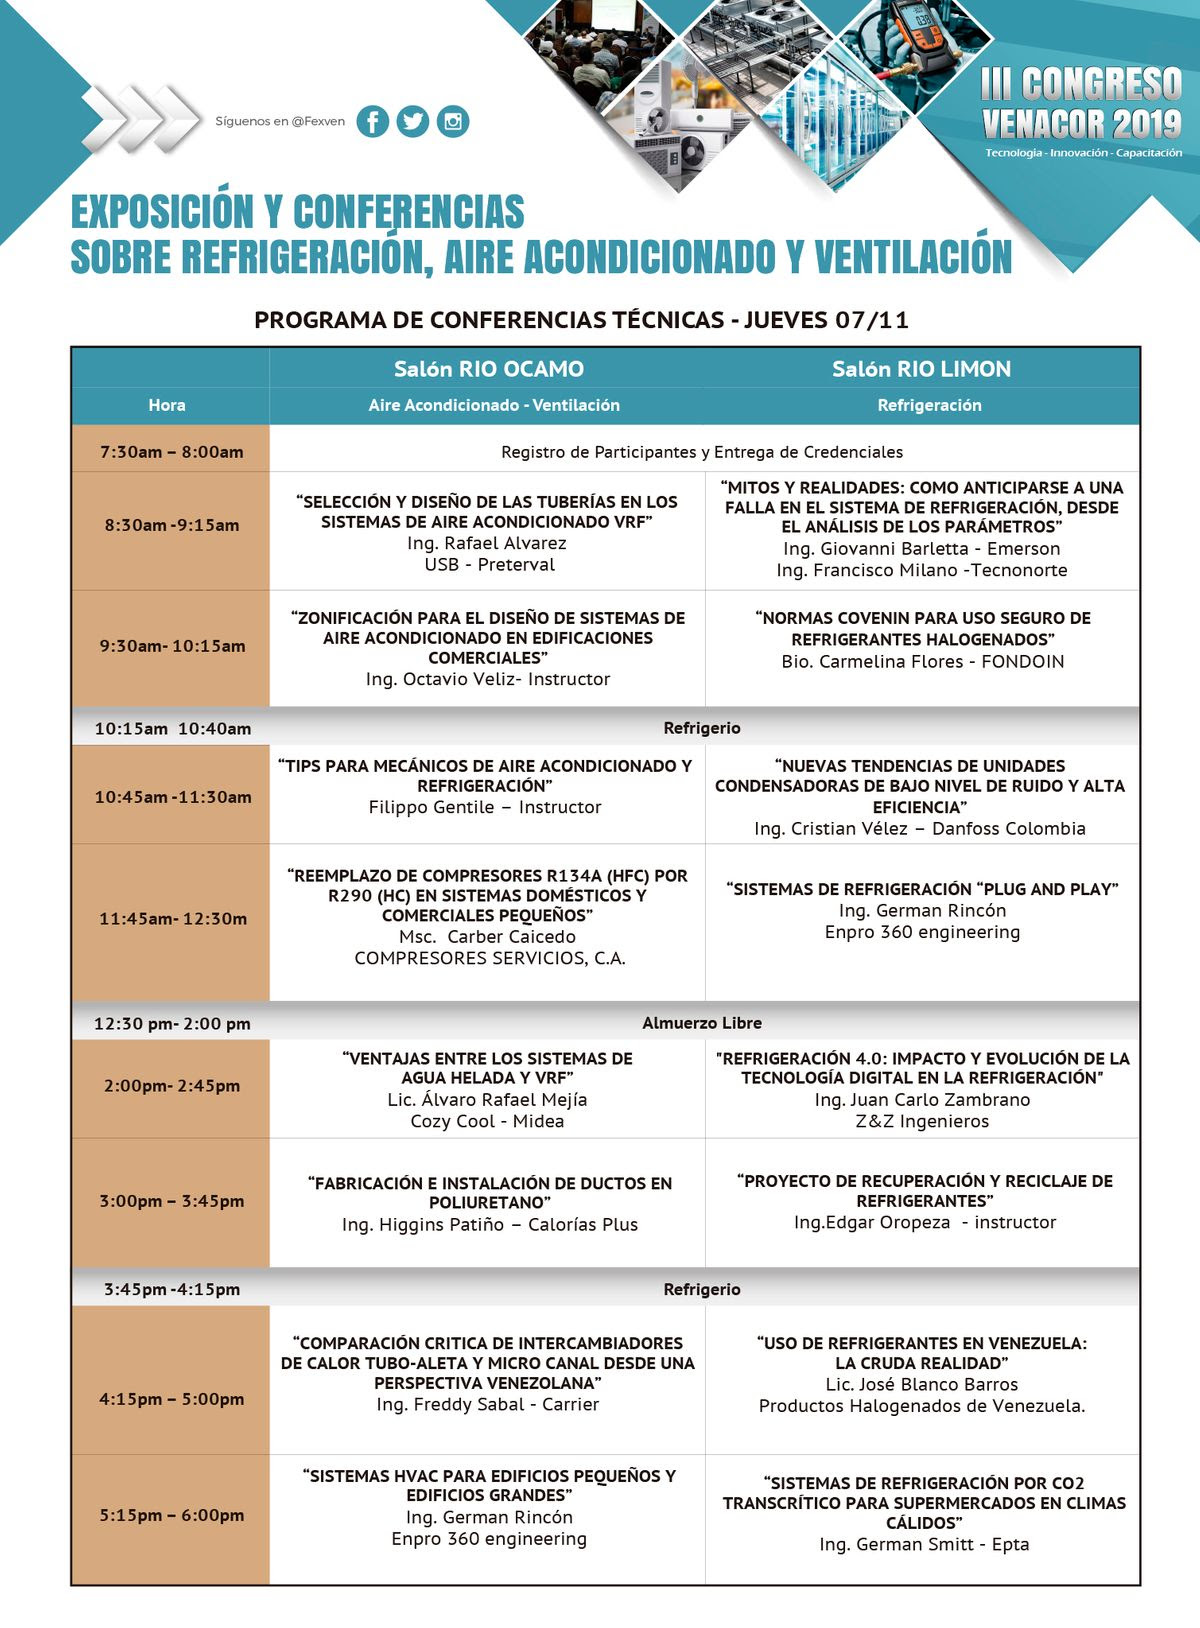 Programa de conferencias técnicas - III Congreso de Venacor 2019